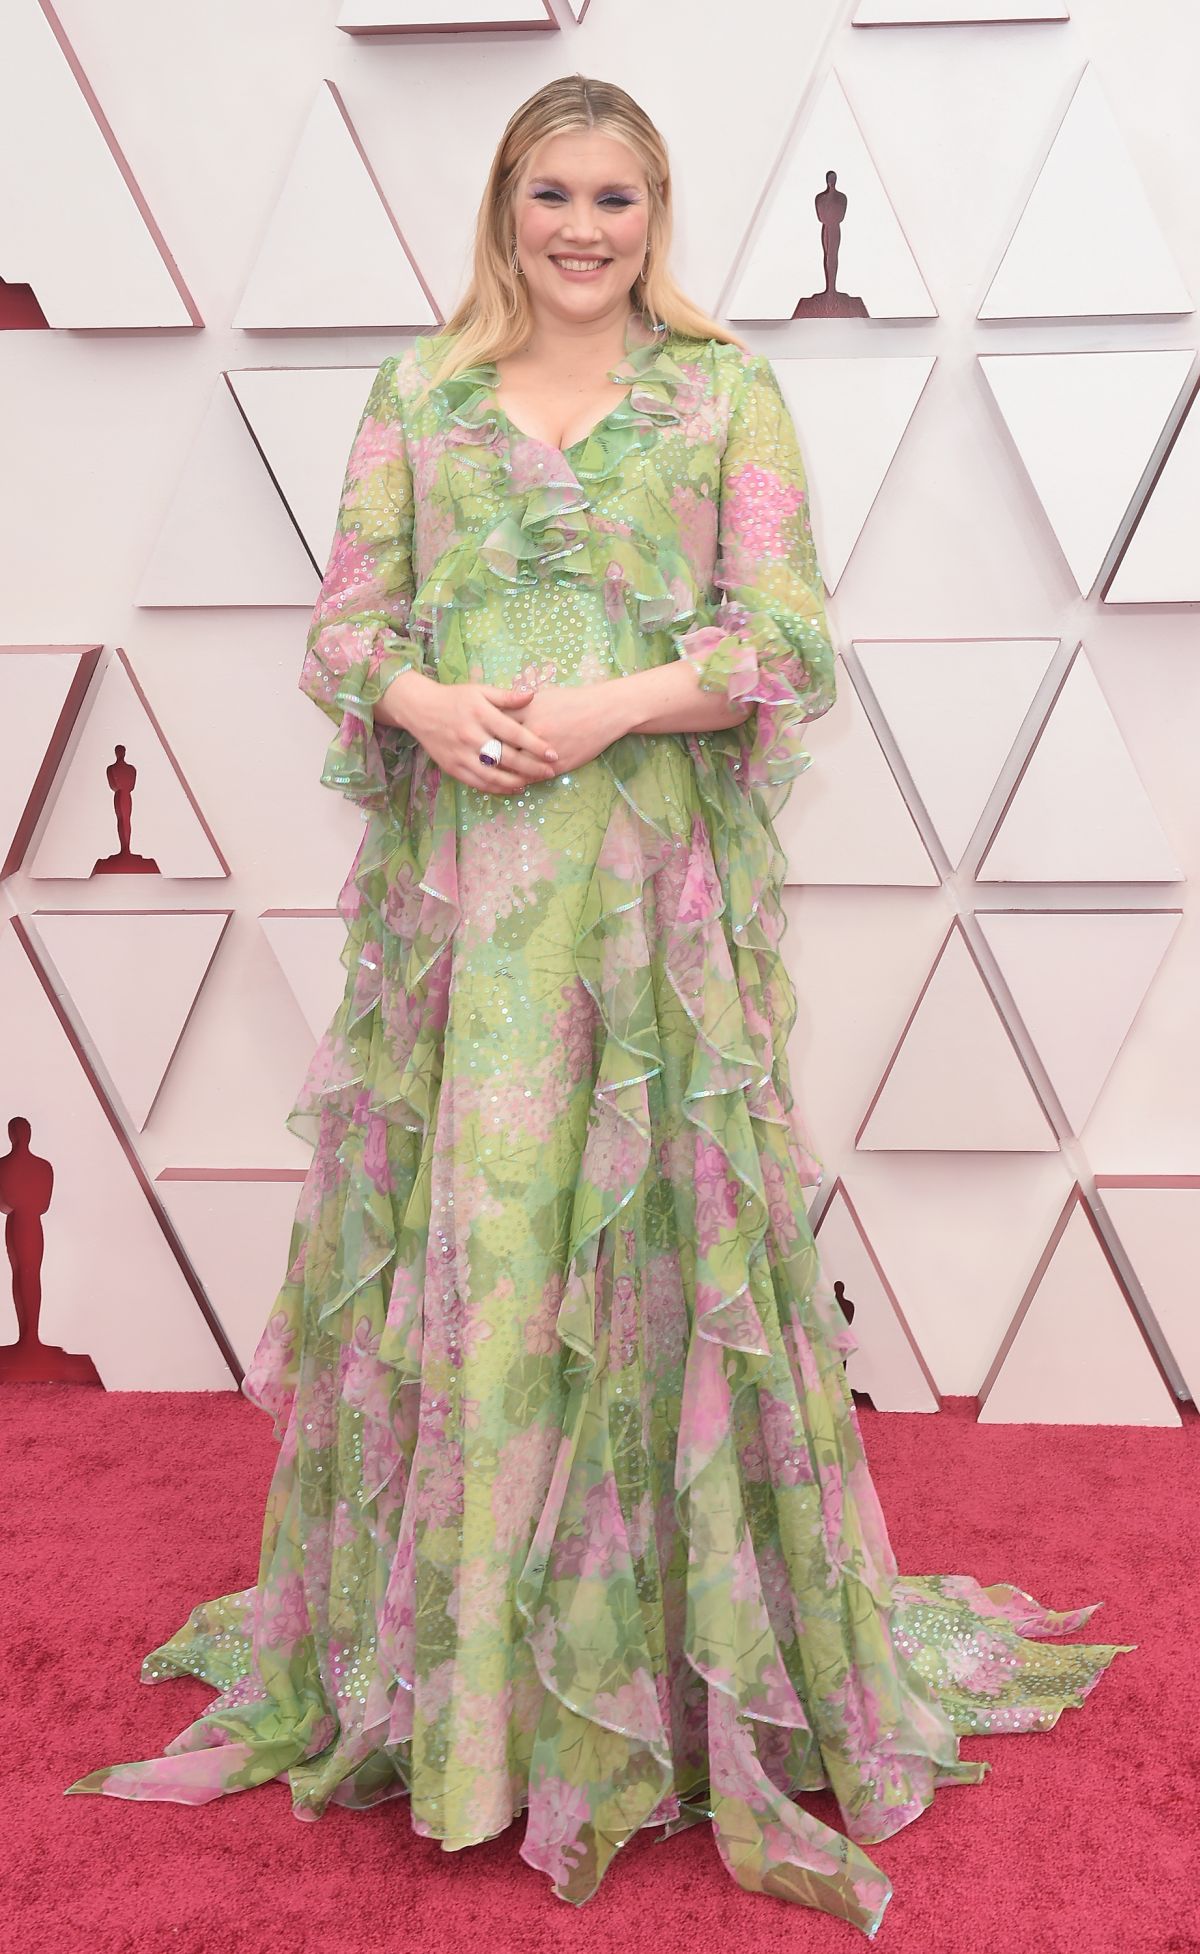 Emerald Fennel poartă o rochie verde, cu flori de culoare roz, pe covorul roșu, la Premiile Oscar 2021